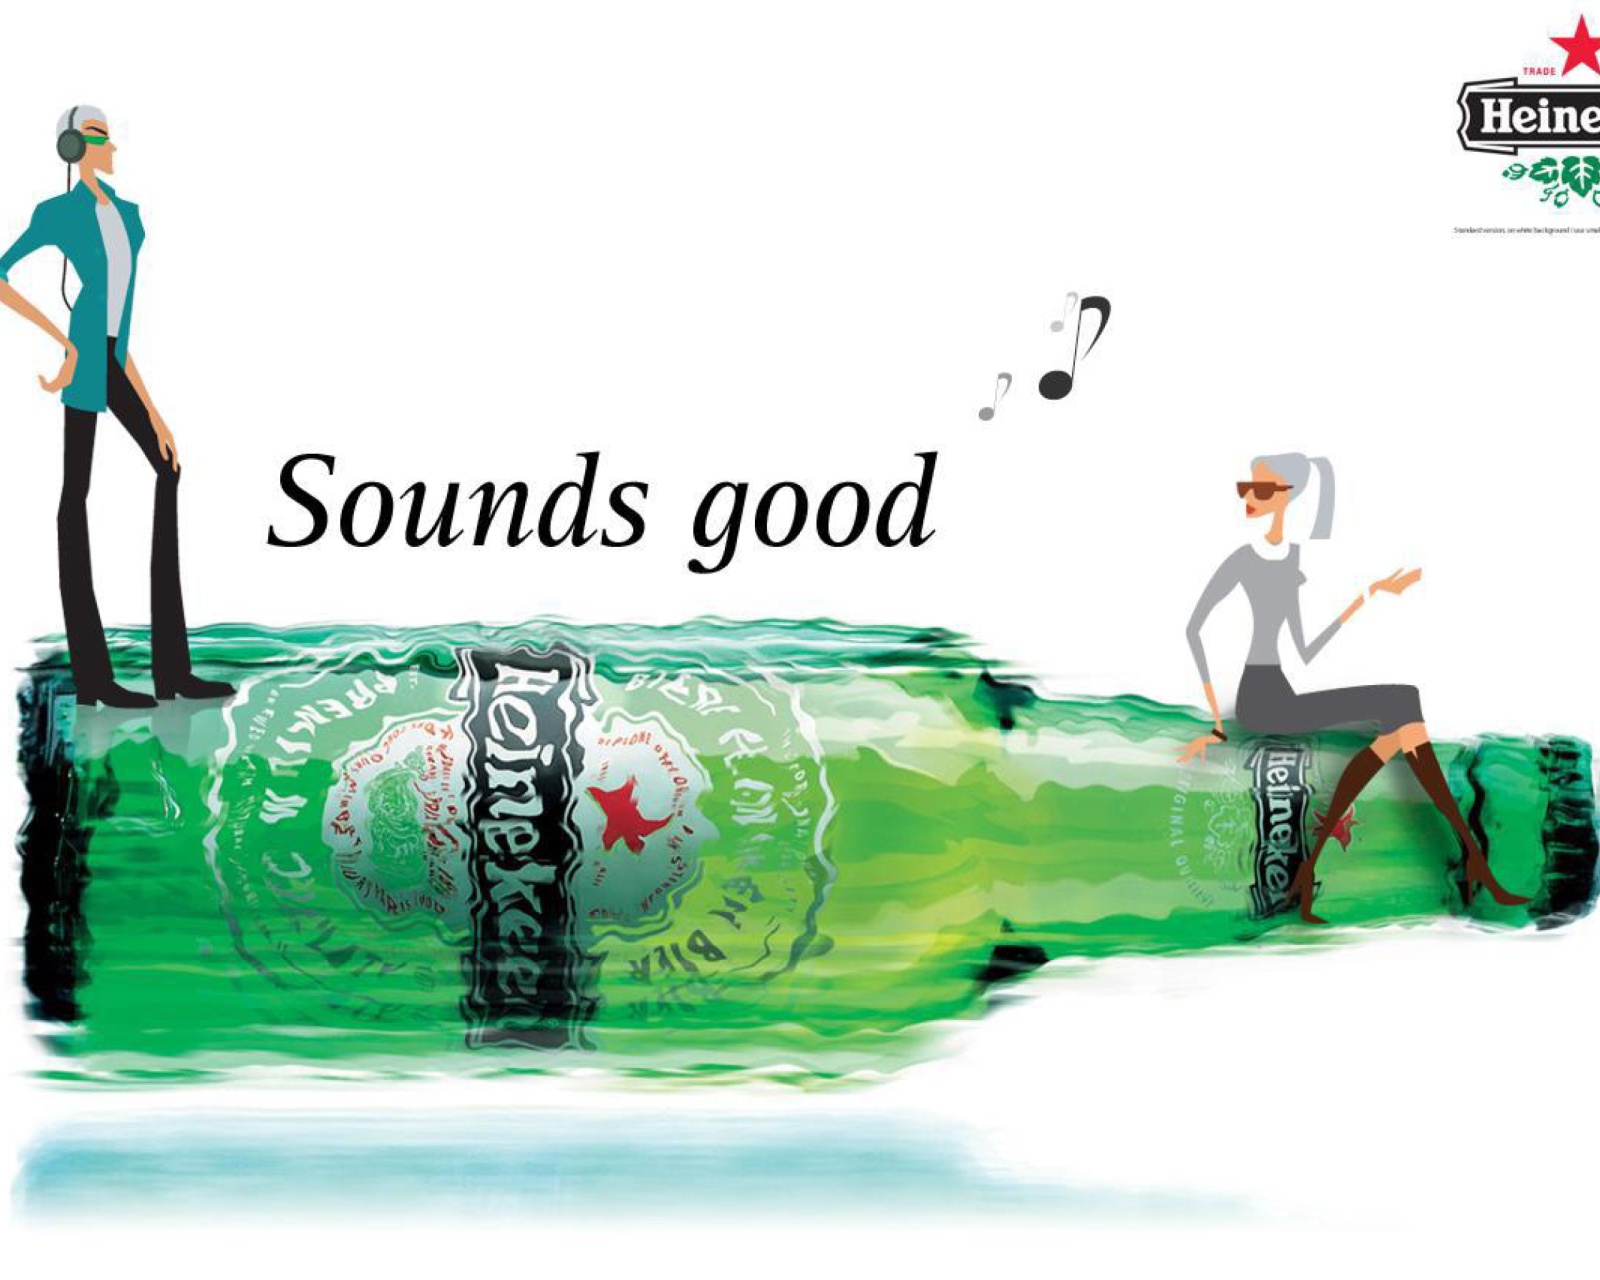 Das Heineken, Sounds good Wallpaper 1600x1280